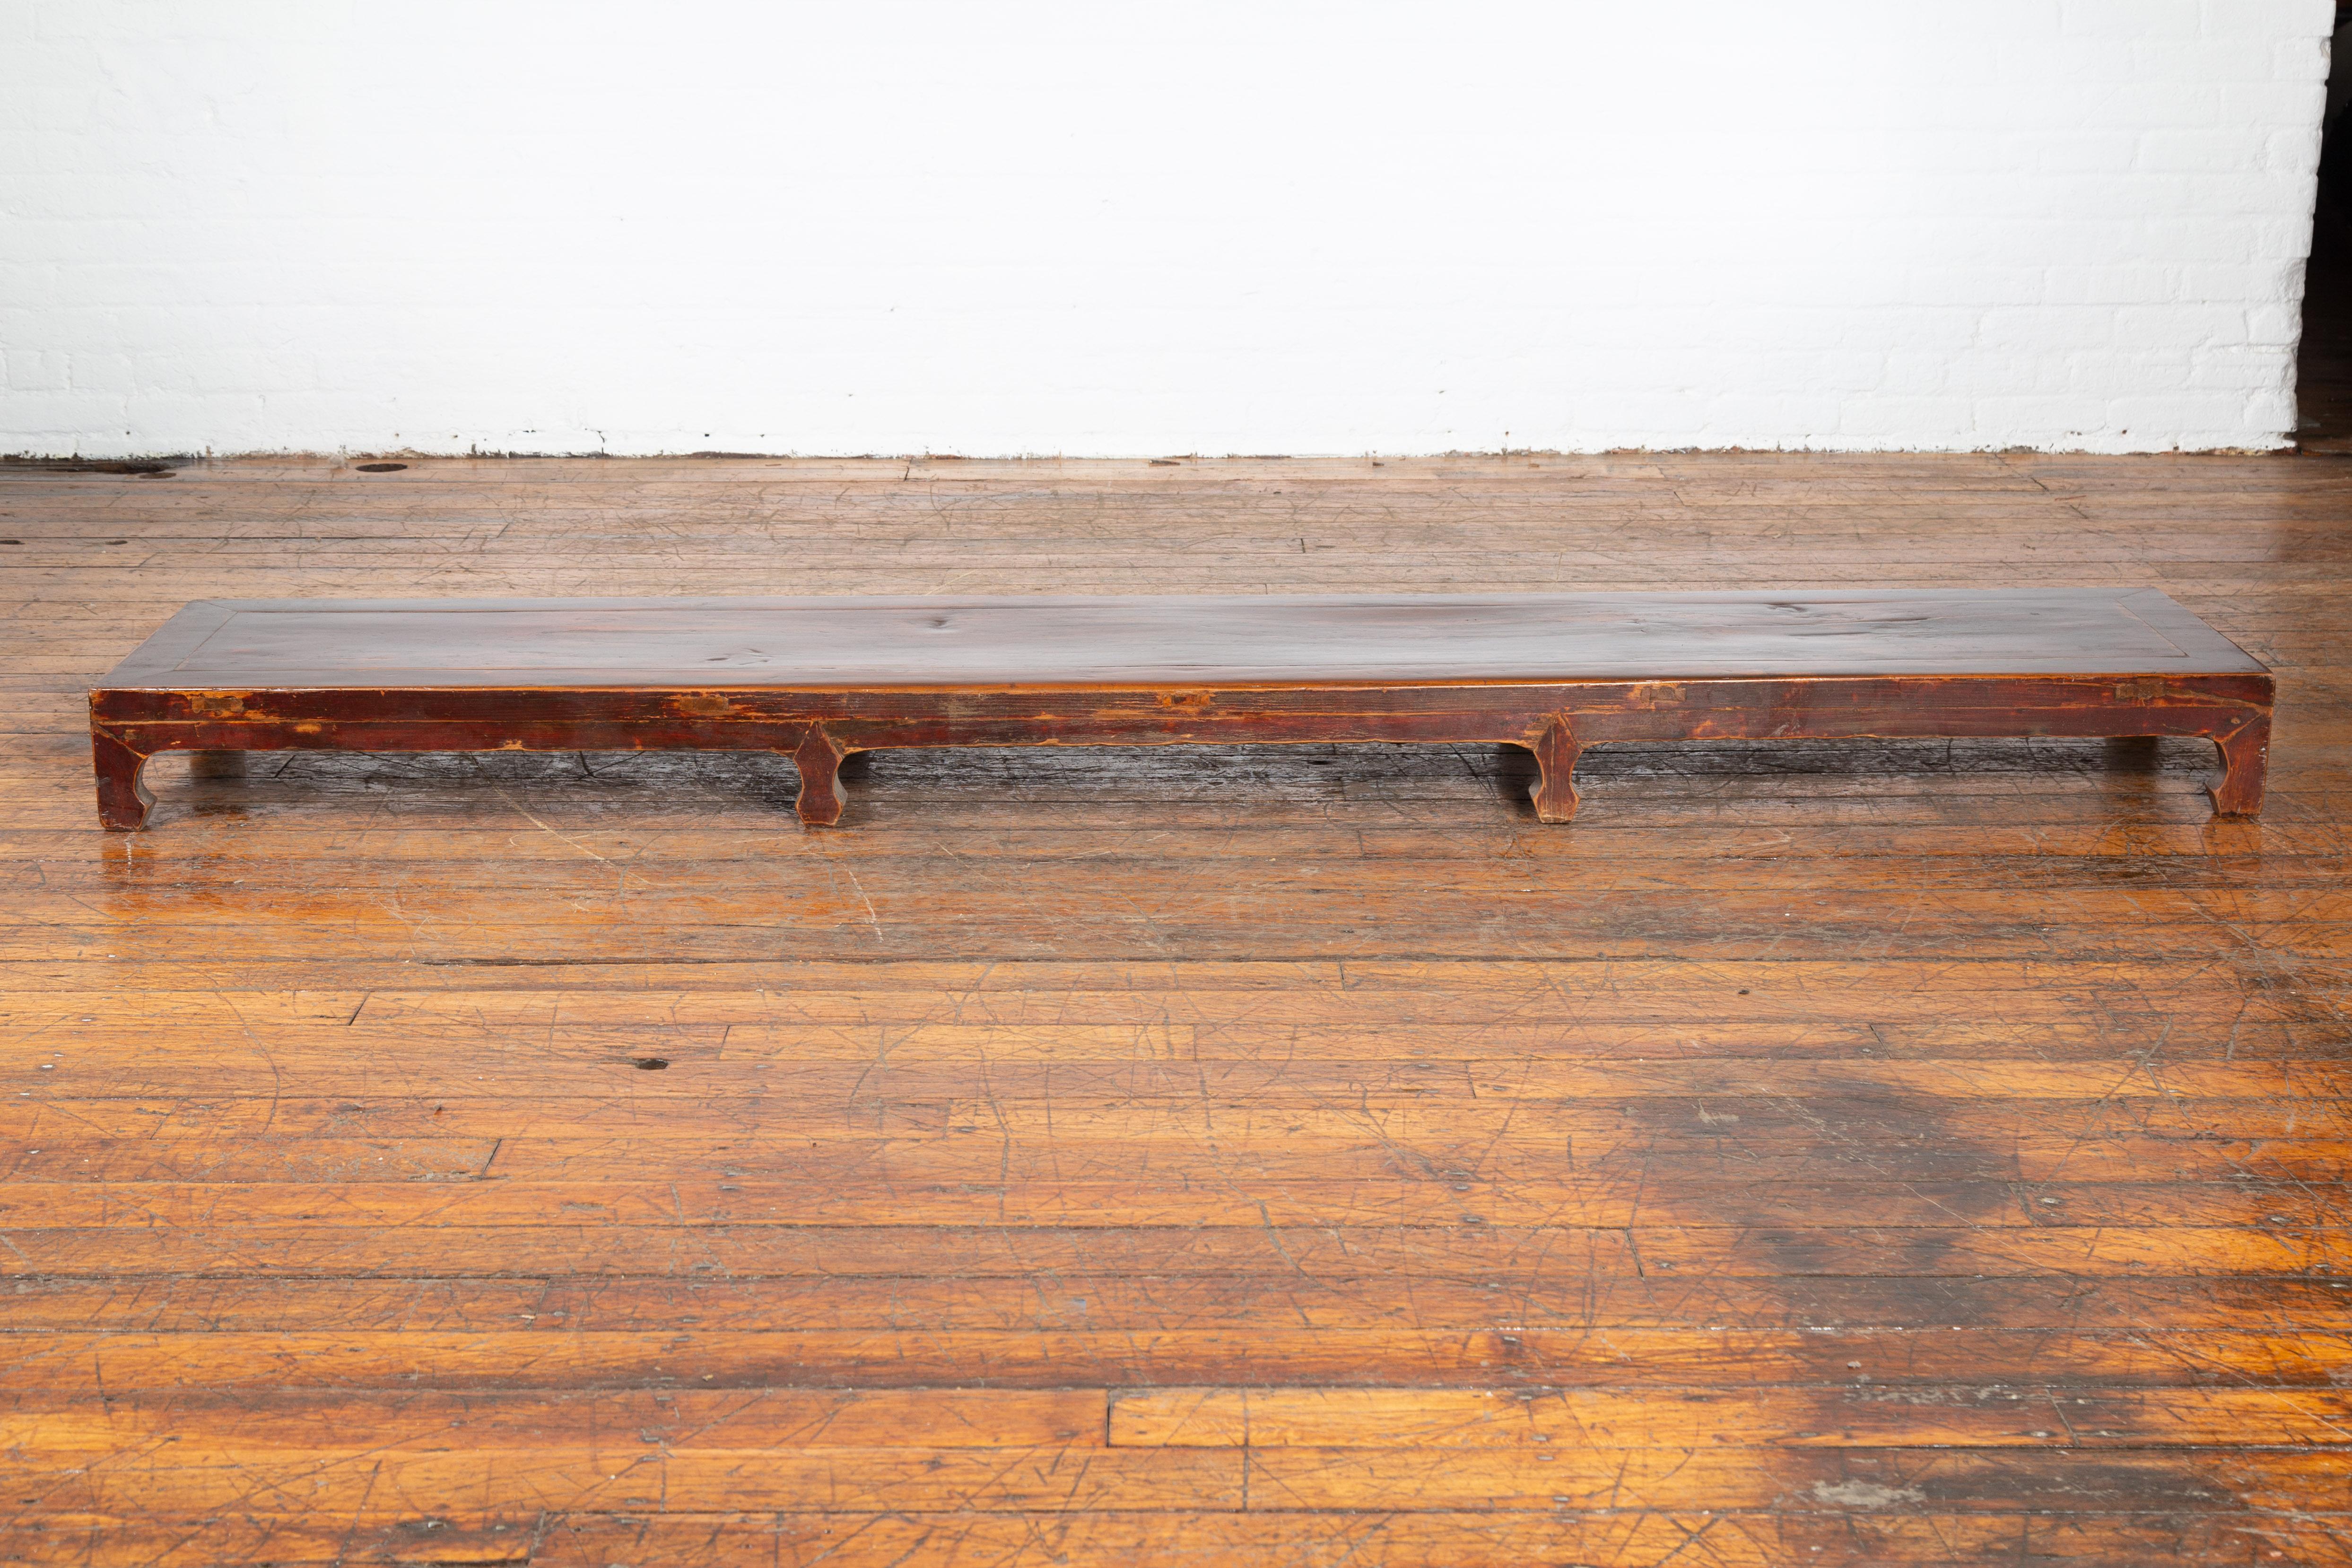 Une table basse Kang vintage chinoise du milieu du 20ème siècle, avec une laque multicolore. Créée en Chine au milieu du siècle dernier, cette table basse Kang présente un plateau rectangulaire long et étroit, surmonté de huit petits pieds sculptés.